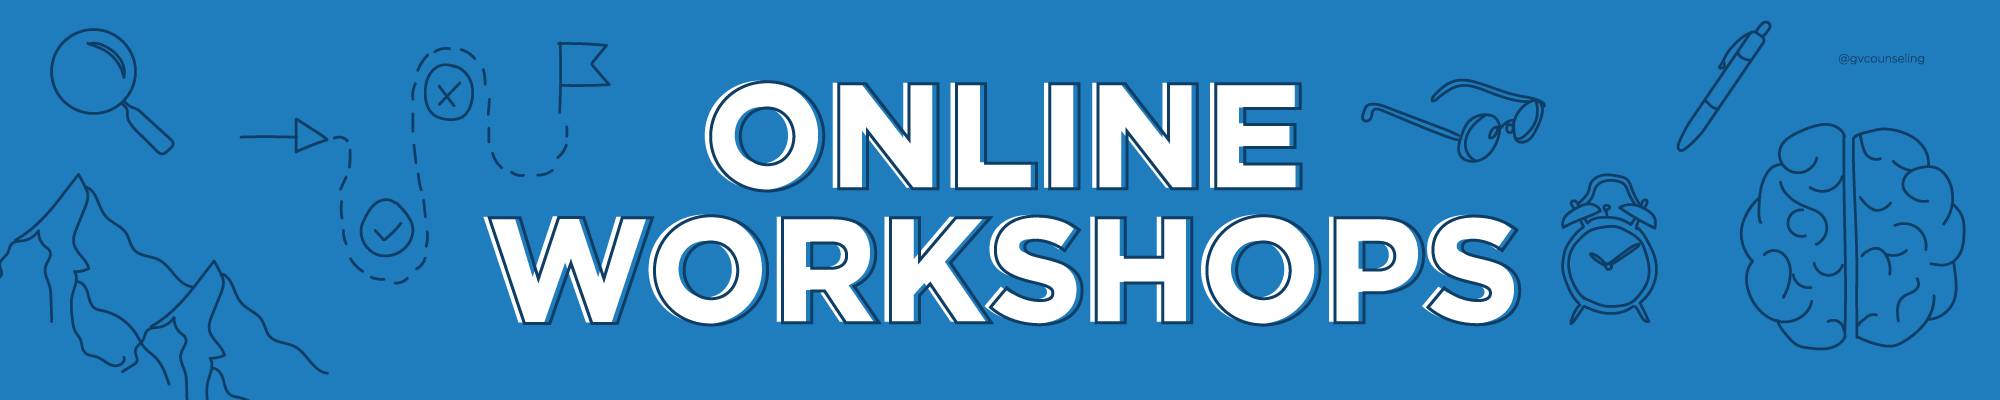 Online workshops